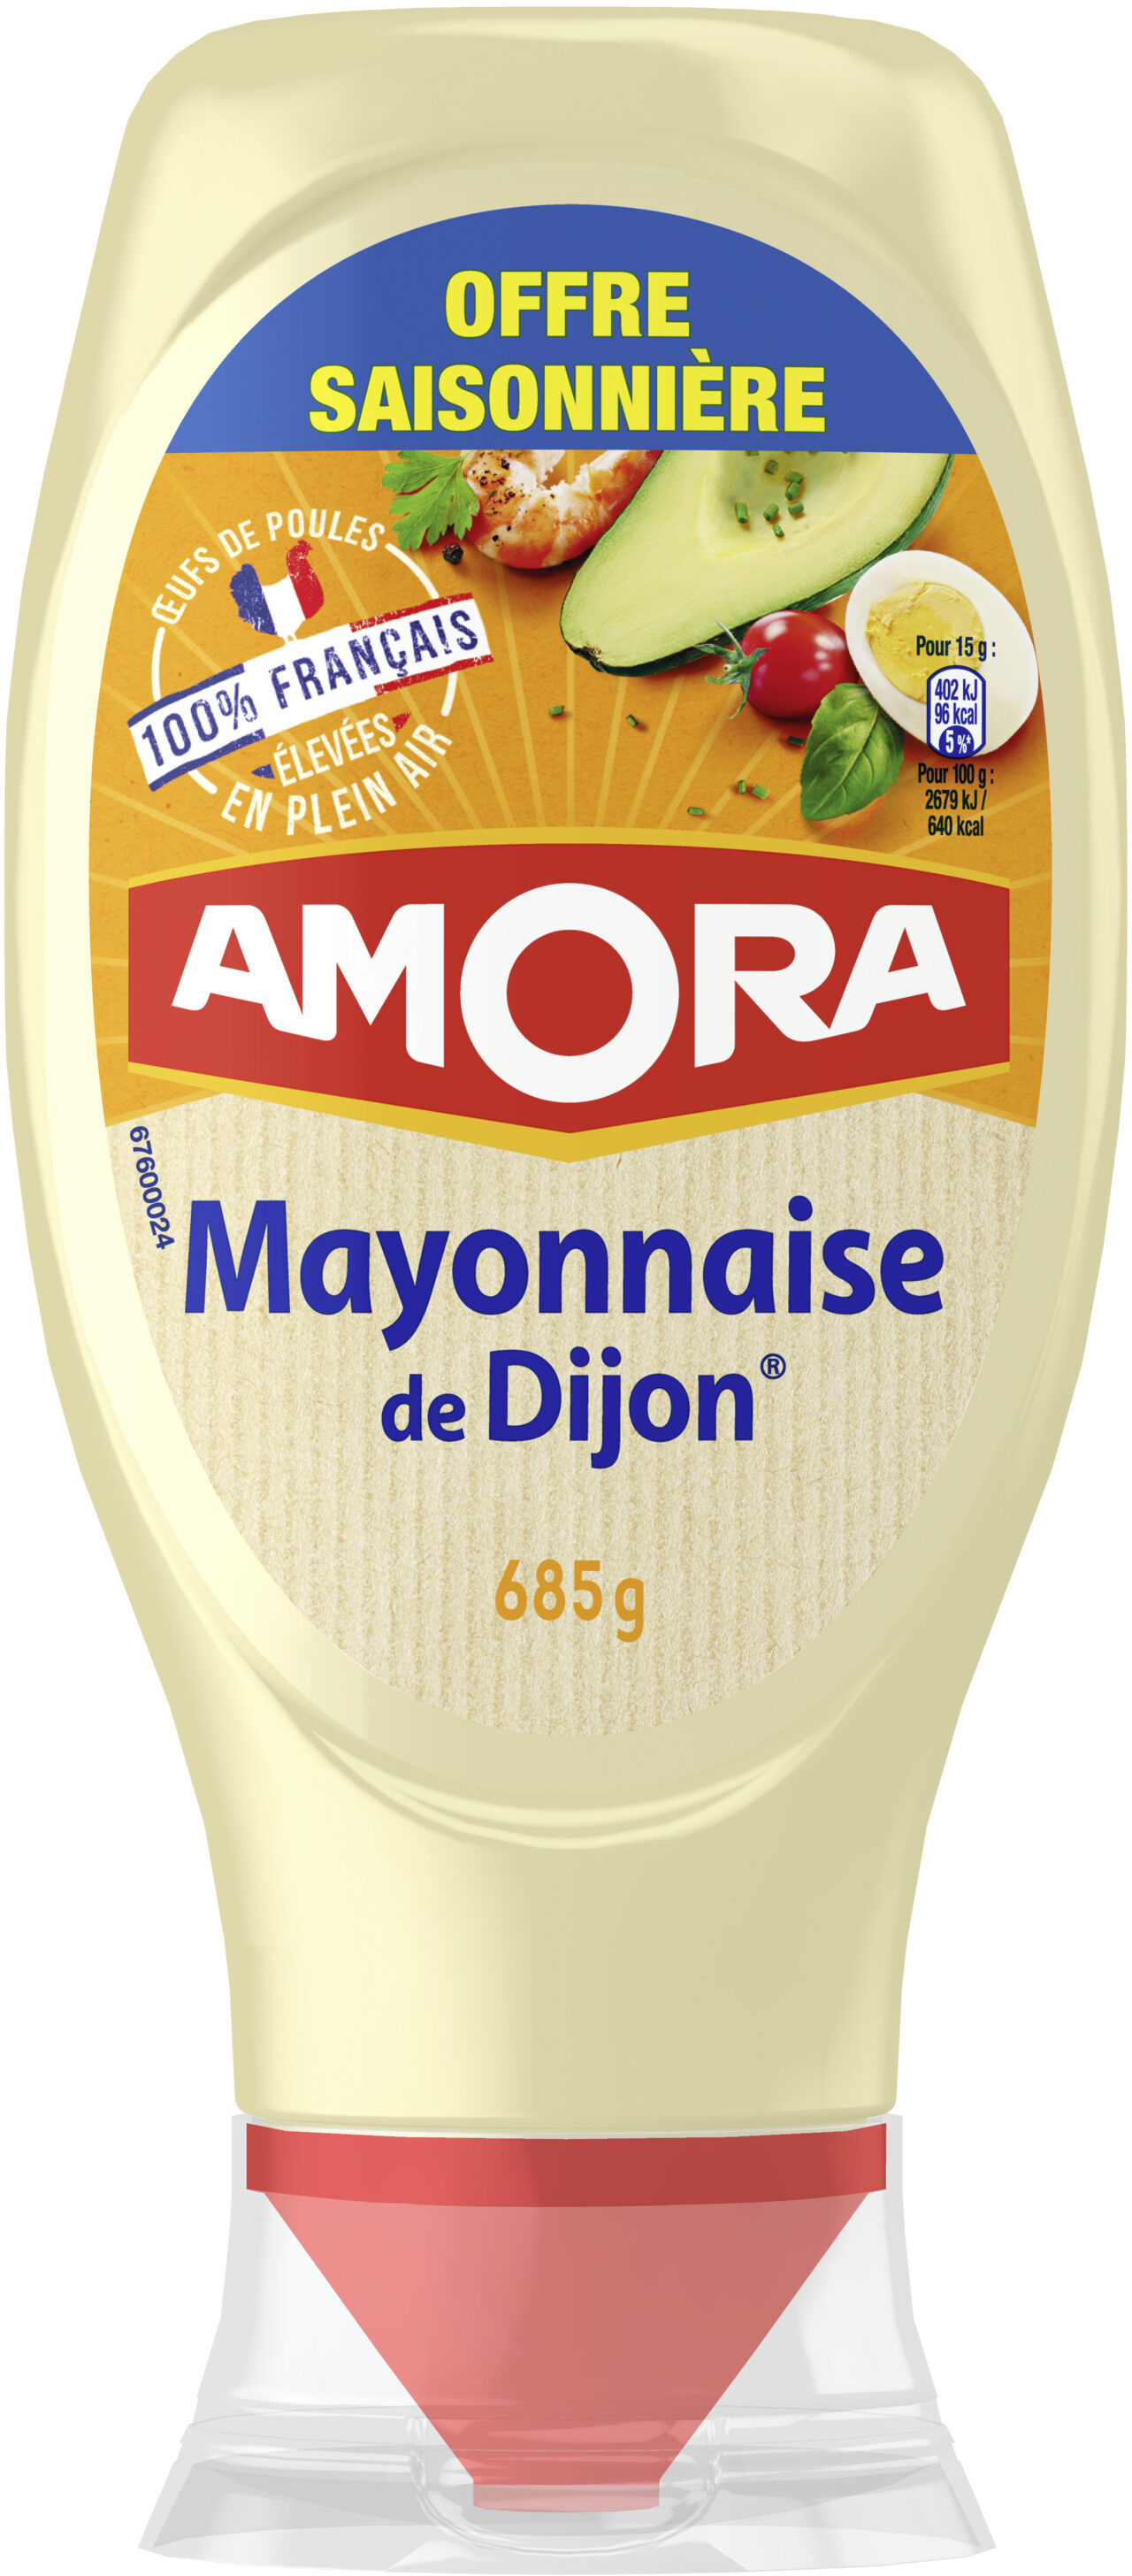 Amora Mayonnaise Dijon Nature Œufs Français Offre Saisonnière Flacon Souple 685g - Product - fr